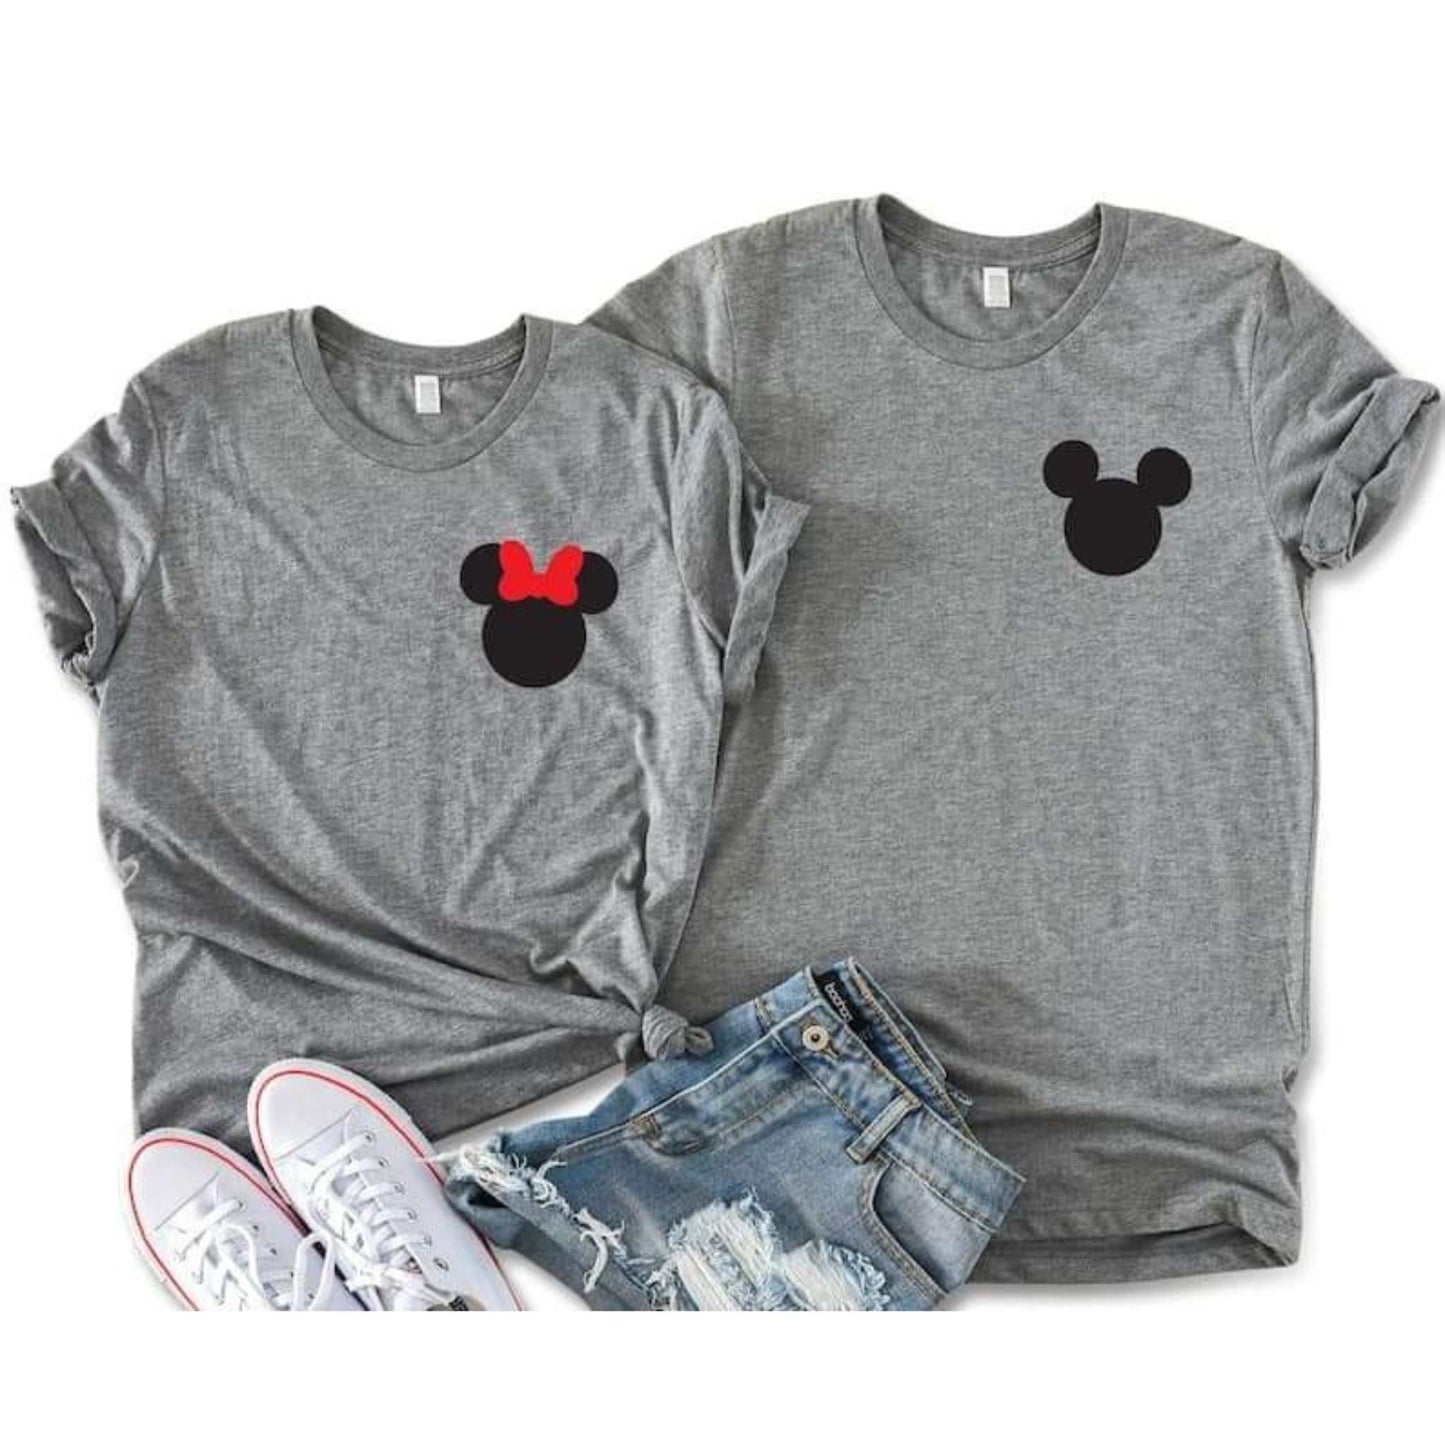 Tricouri de cuplu personalizate, 100% bumbac, cu Mickey Mouse, coual ideal de cuplu pentru ziua indragostitilor.